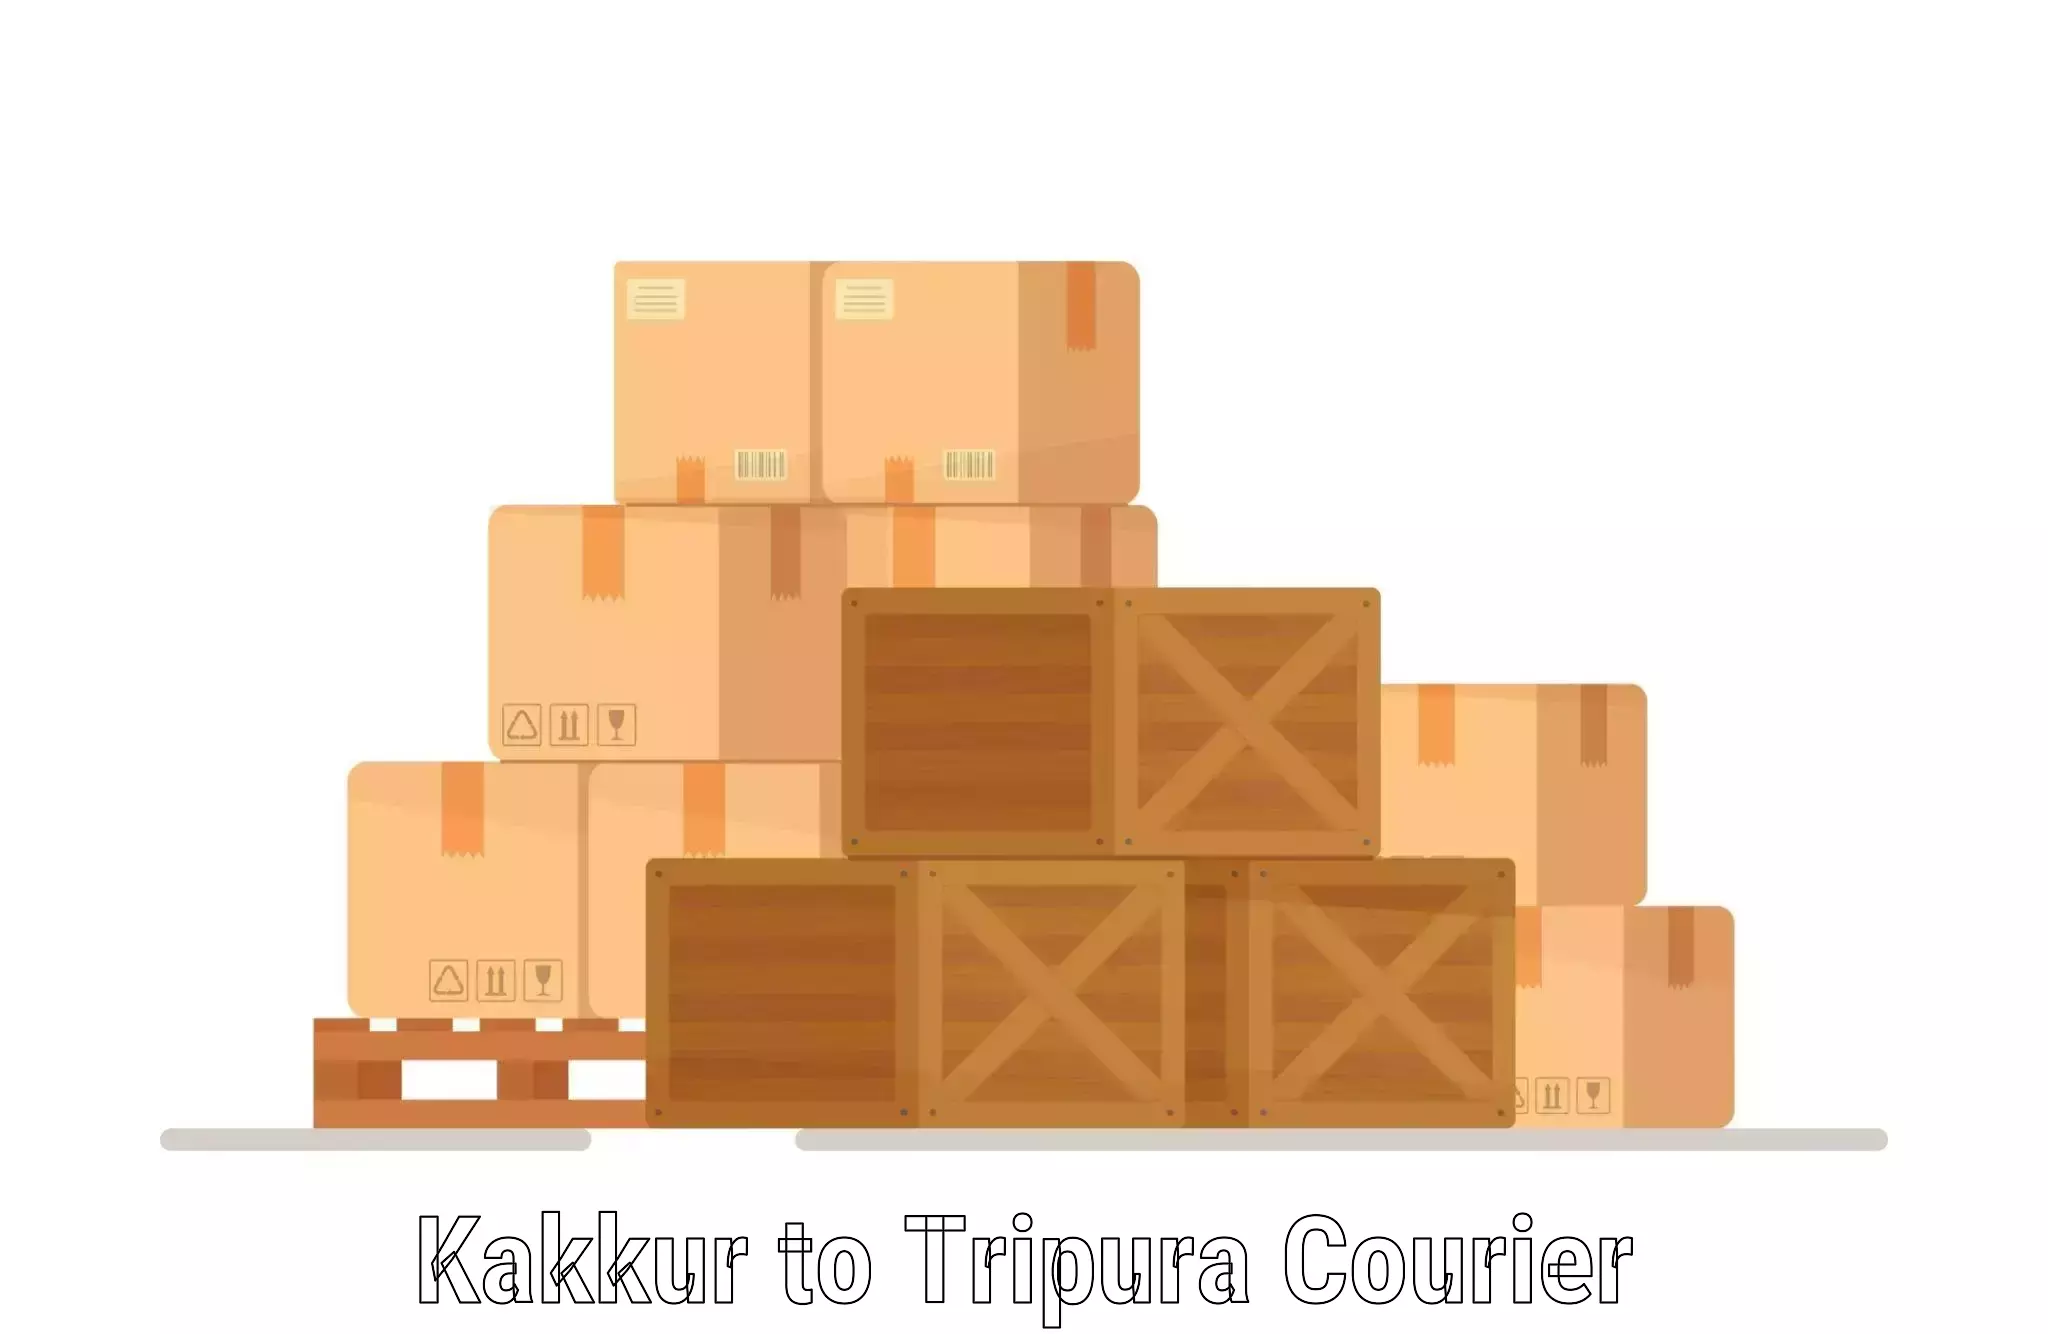 Express courier capabilities Kakkur to Teliamura